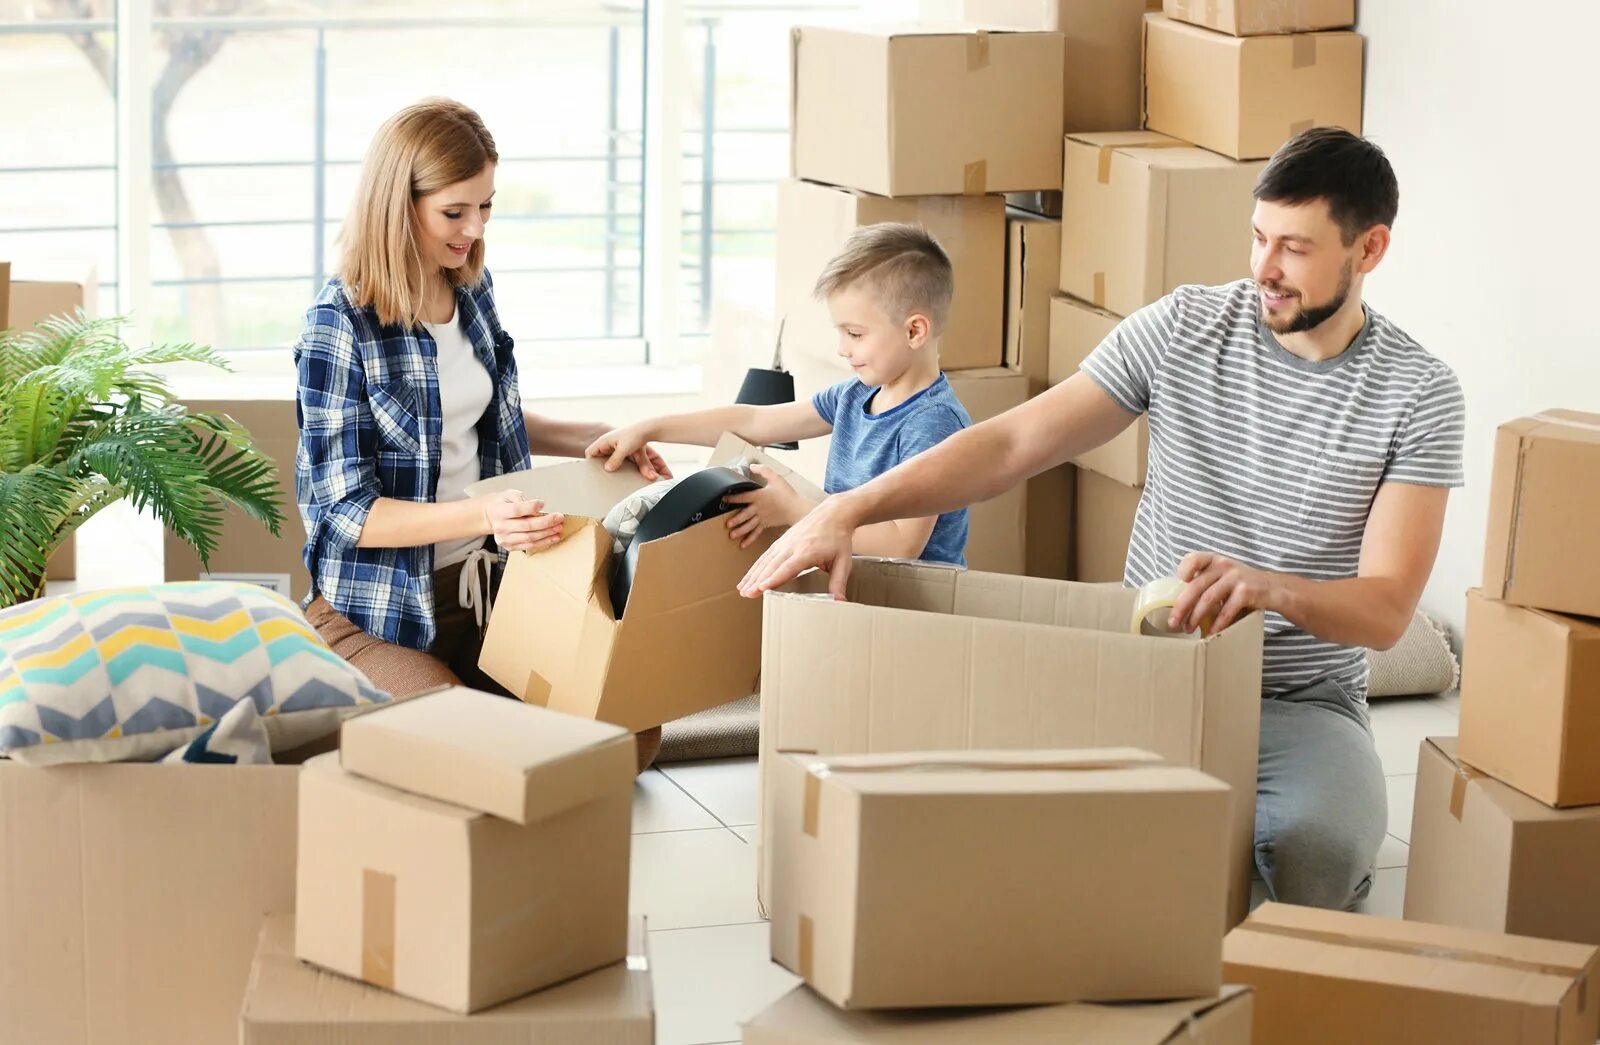 Переехать с предоставлением жилья. Переезд. Семья в квартире с коробками. Переезжают в квартиру. Коробки с вещами.